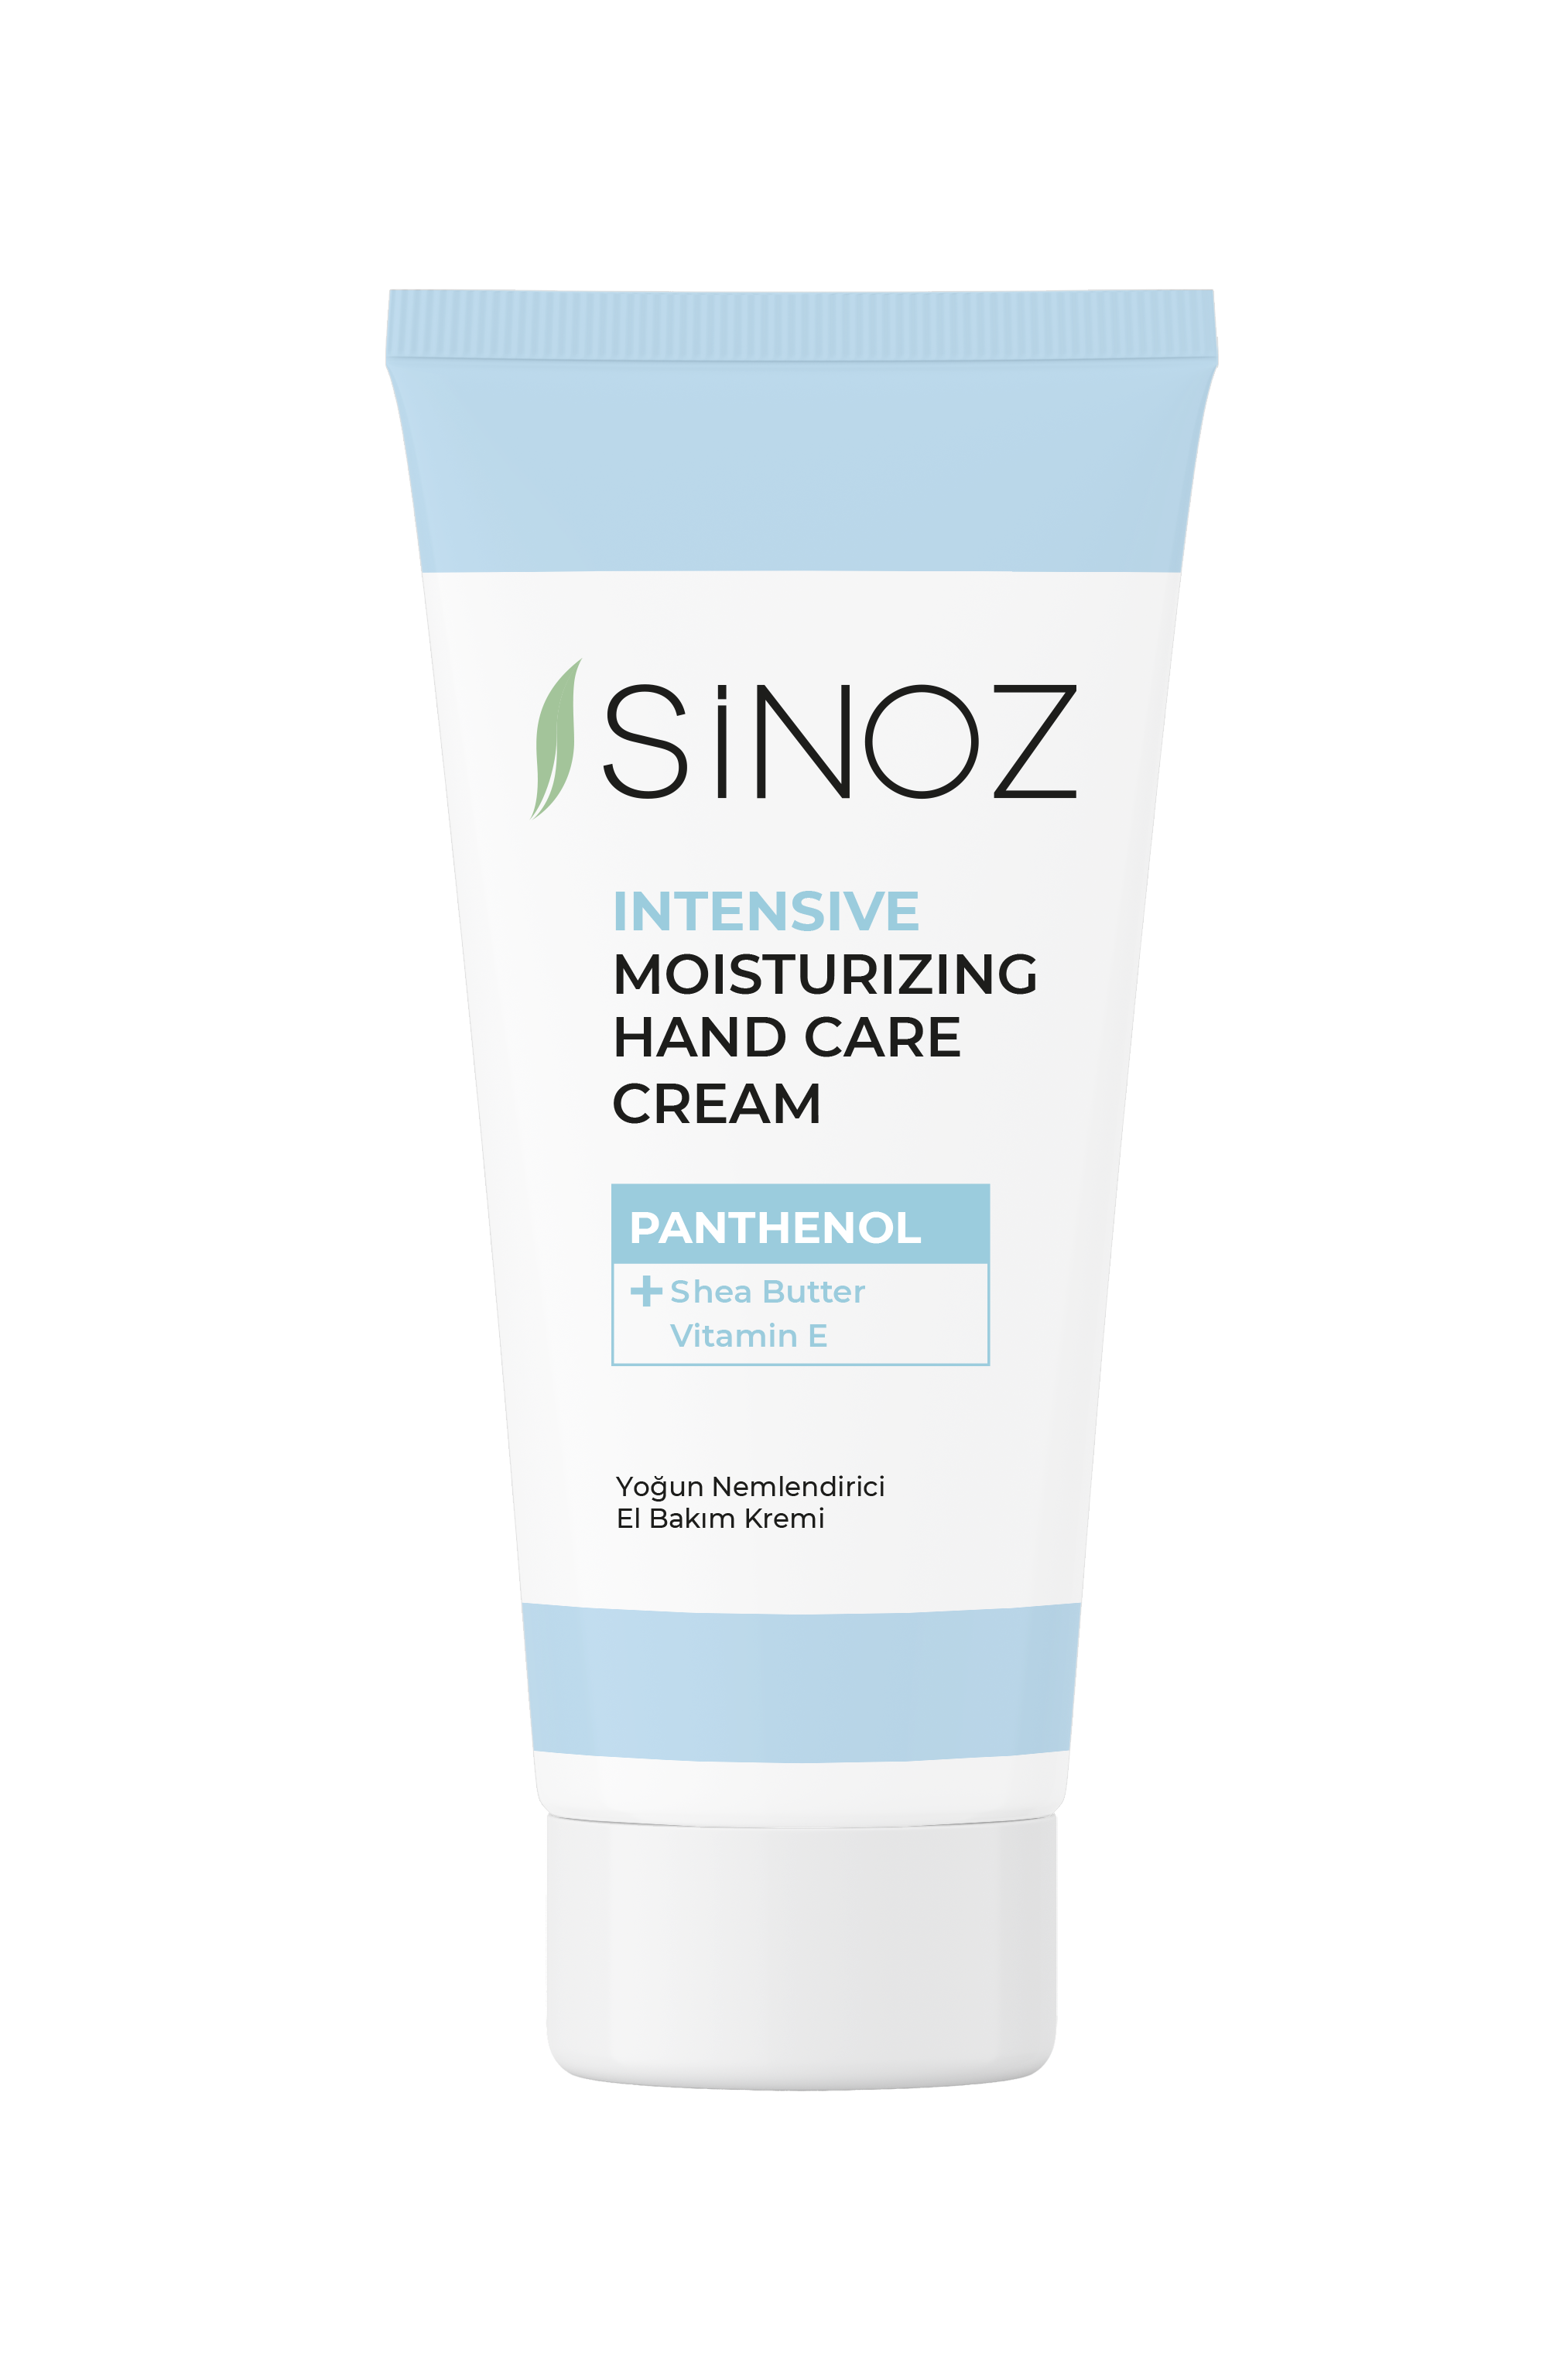 Sinoz Intensive Moisturizing Hand Cream